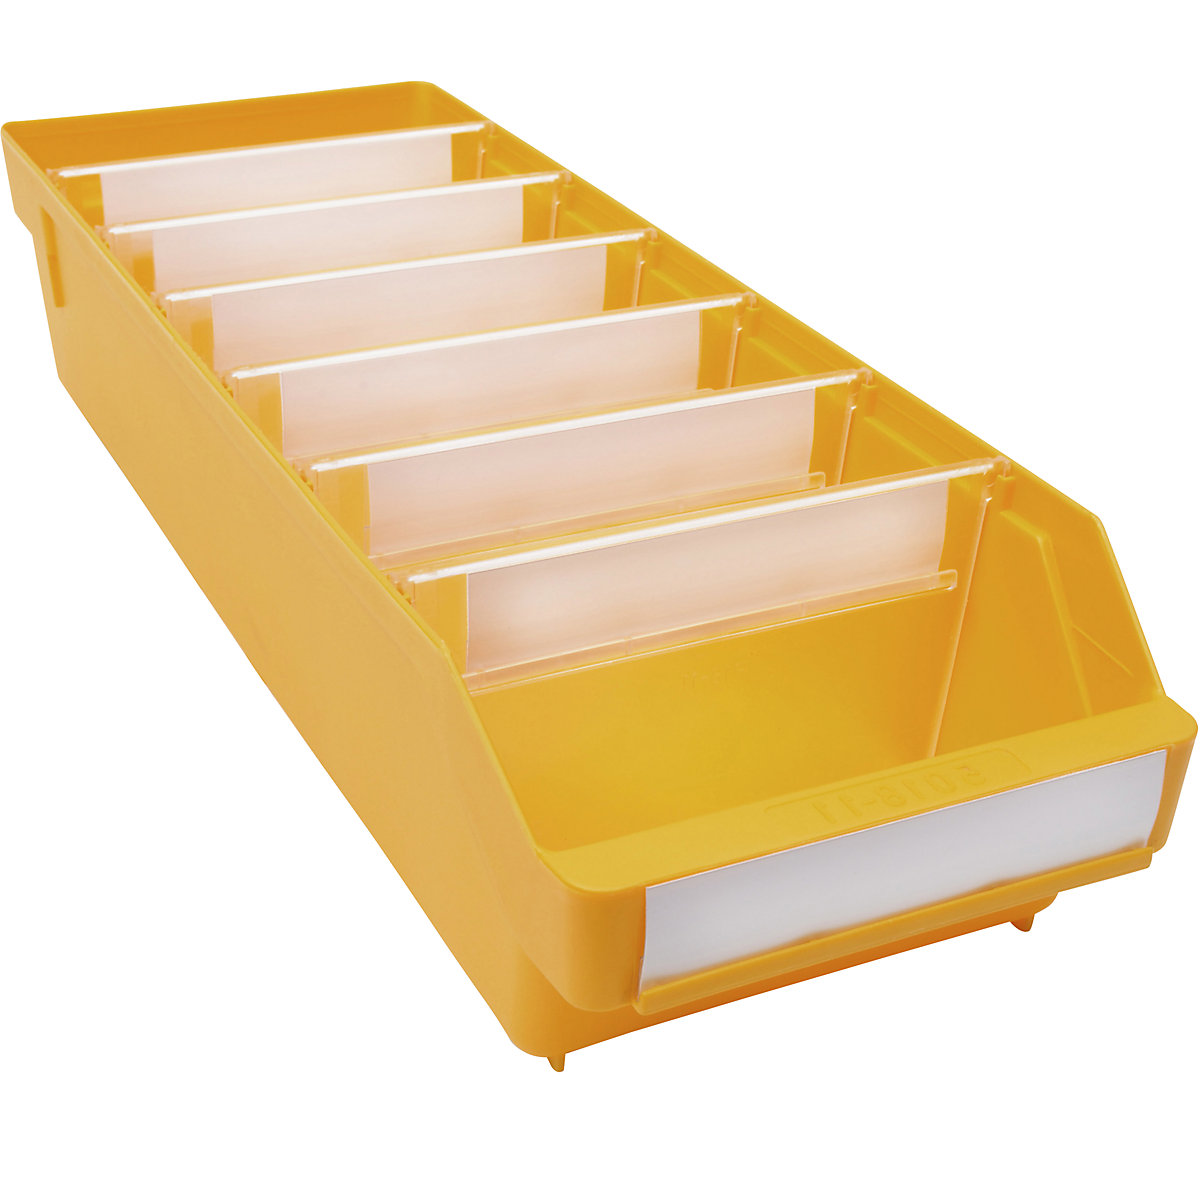 Kutija za regale od polipropilena otpornog na udarce – STEMO, u žutoj boji, DxŠxV 500 x 180 x 110 mm, pak. 20 kom.-10